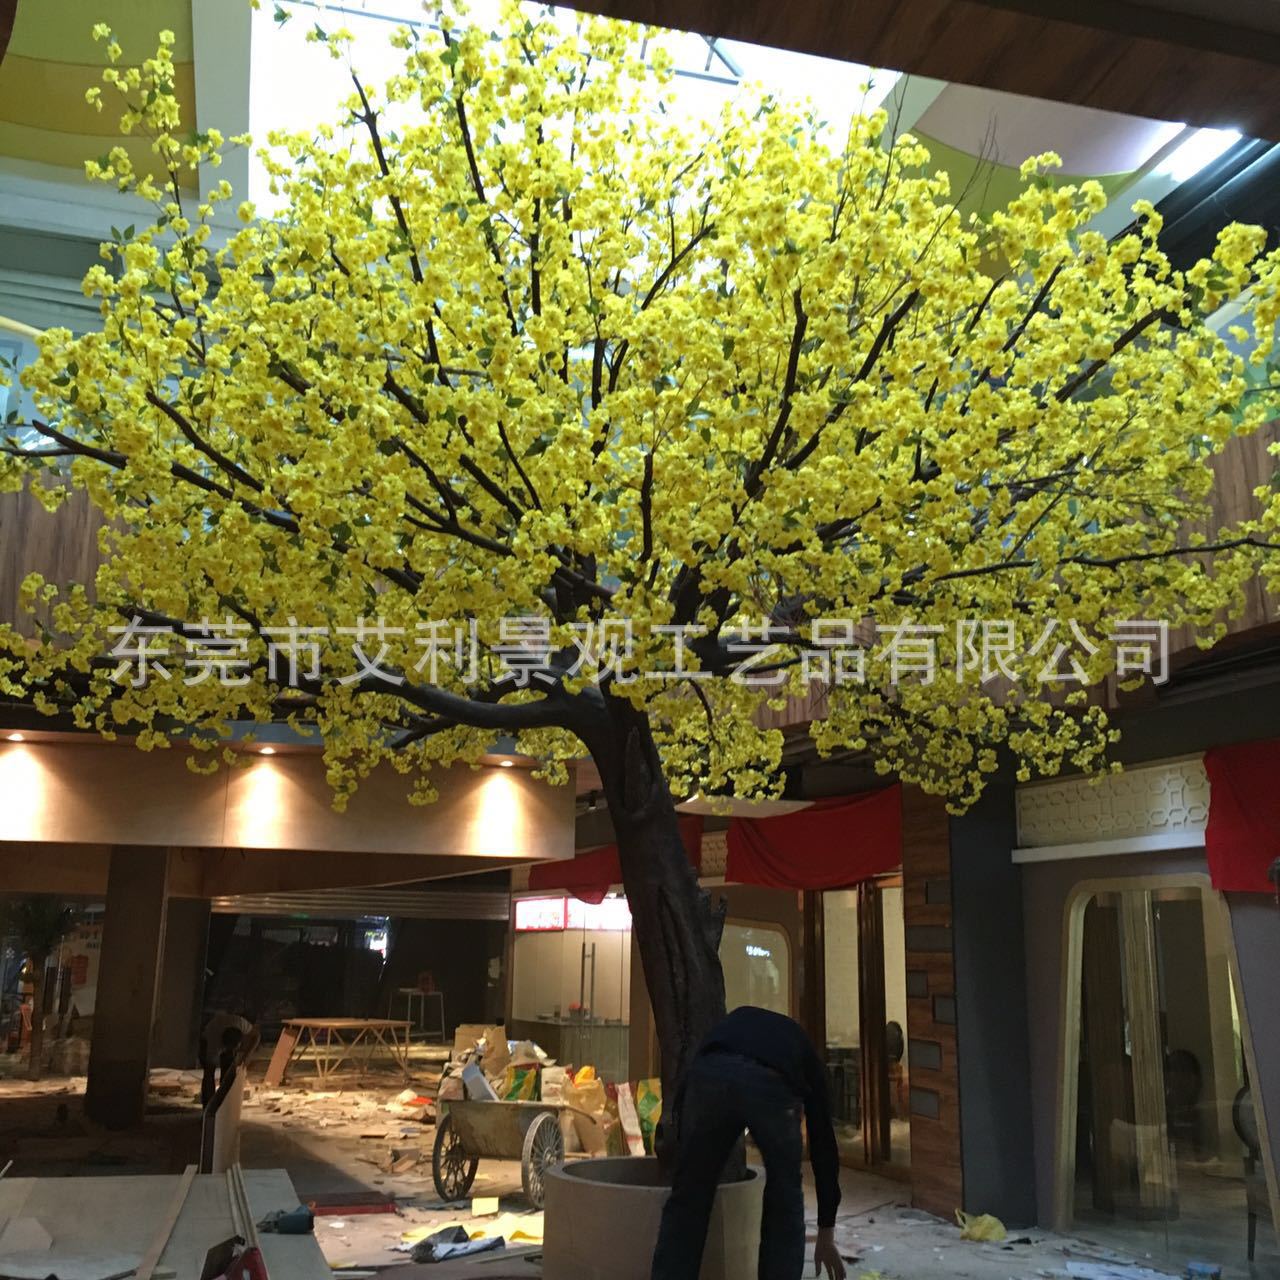 仿真樱花树桃花树 商场酒店装饰假树摆件 人造樱花树仿真大树绿植